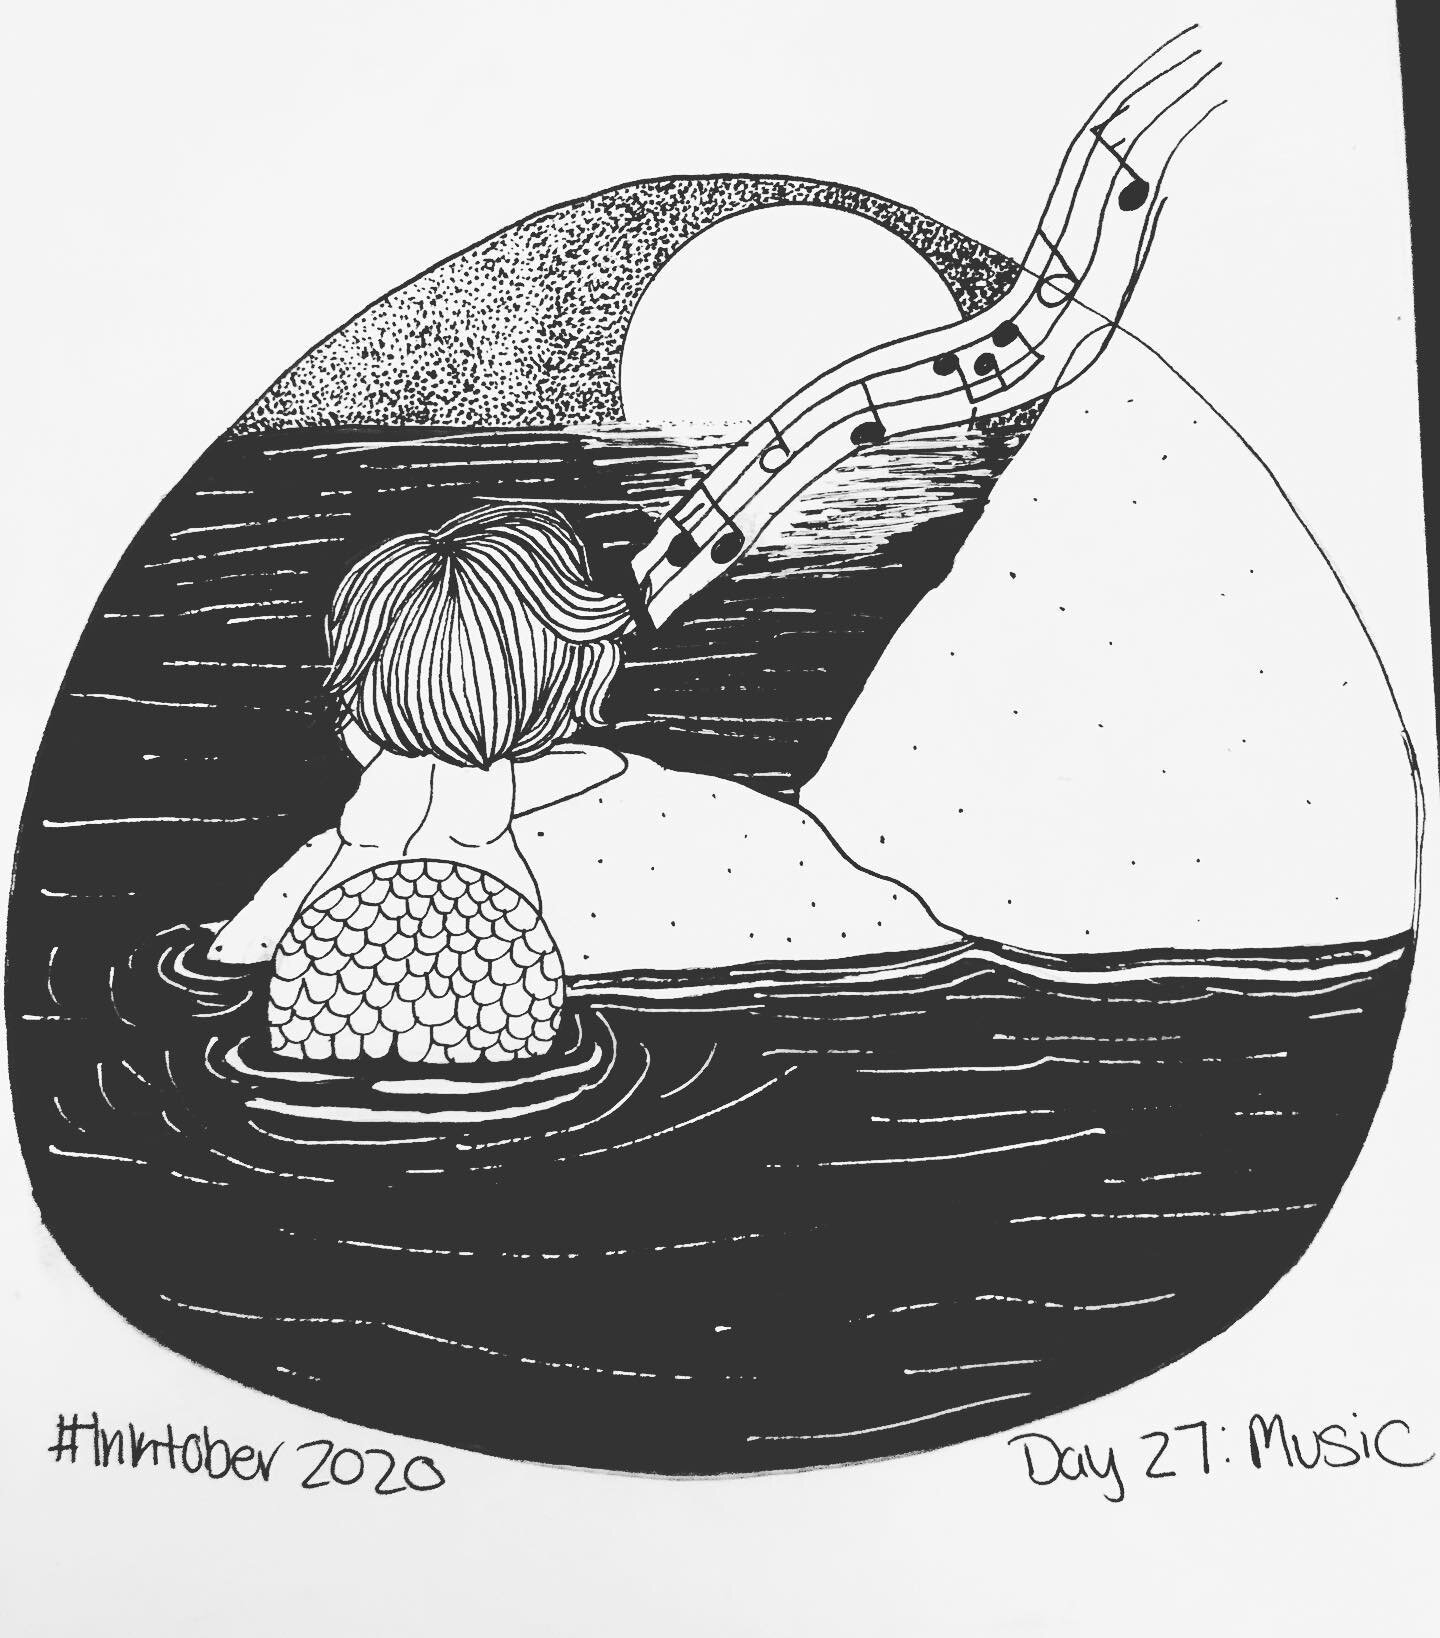 Inktober 2020, Day 27: Music 
.
.
.
.
.
.
.
.
.
.
#inktober2020 #inktober2020day27music #music #inktober2020day27 #inktober #mermaid #siren #singing #ink #pen #illustration #sketchbook #artchallenge